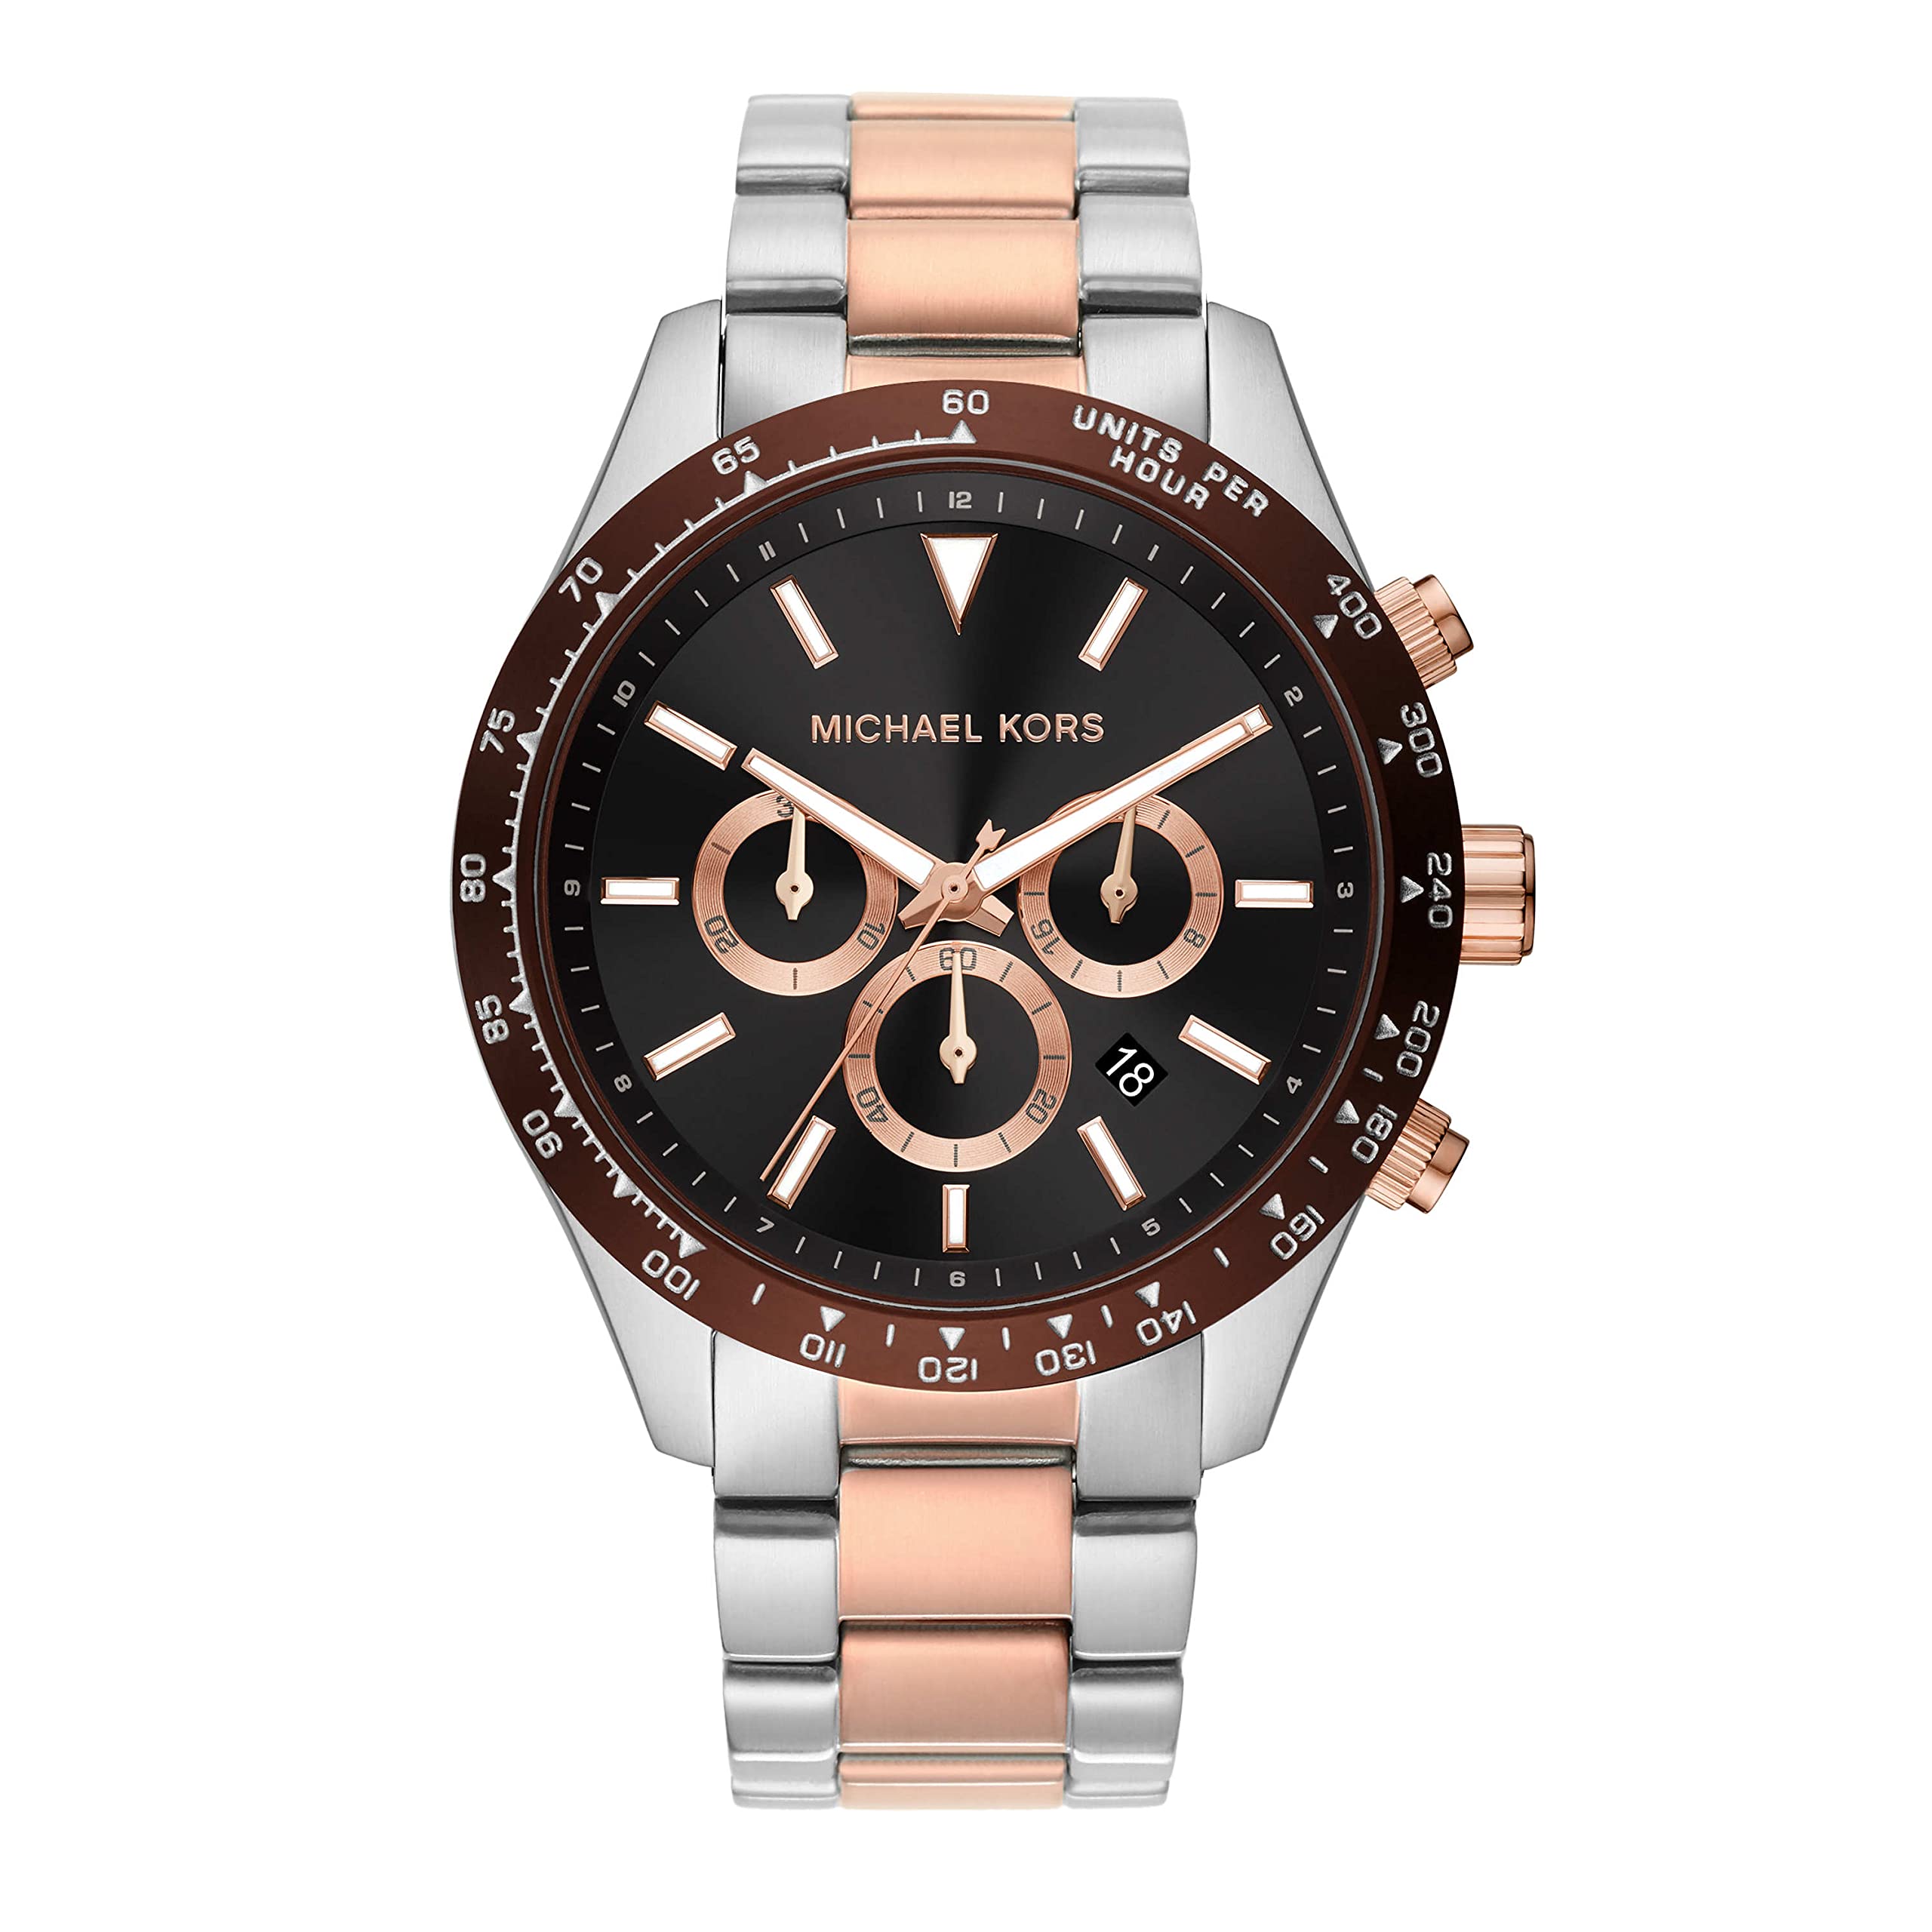 Michael Kors Watch  Mk5535 price in UAE  Amazon UAE  kanbkam